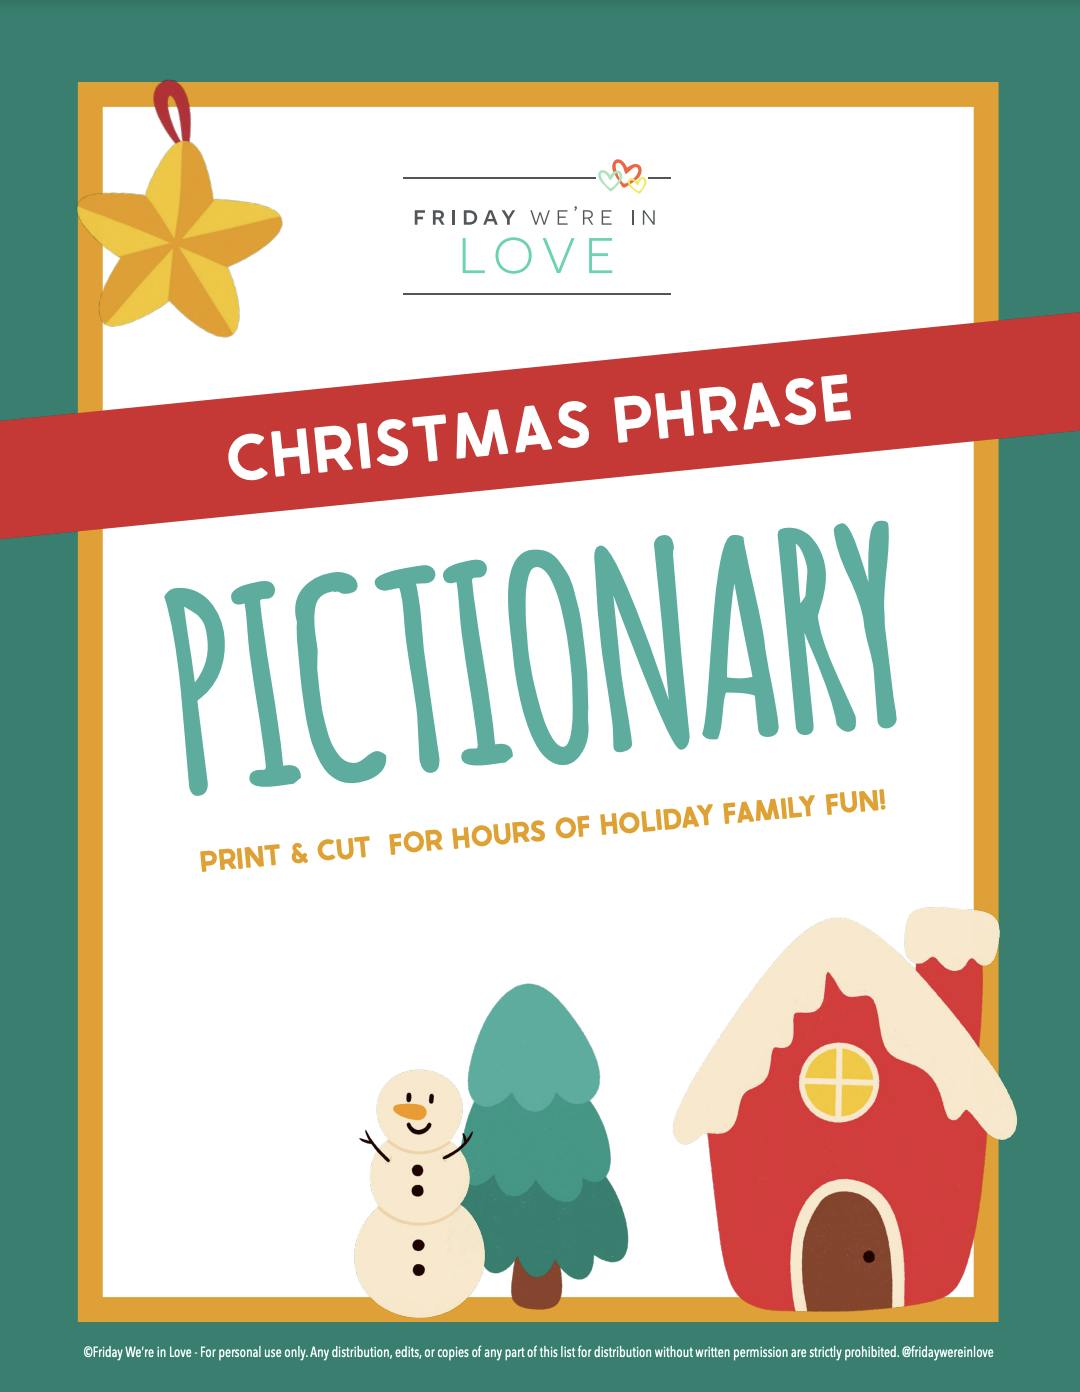 Christmas Pictionary game with Christmas sayings and phrases printable. 